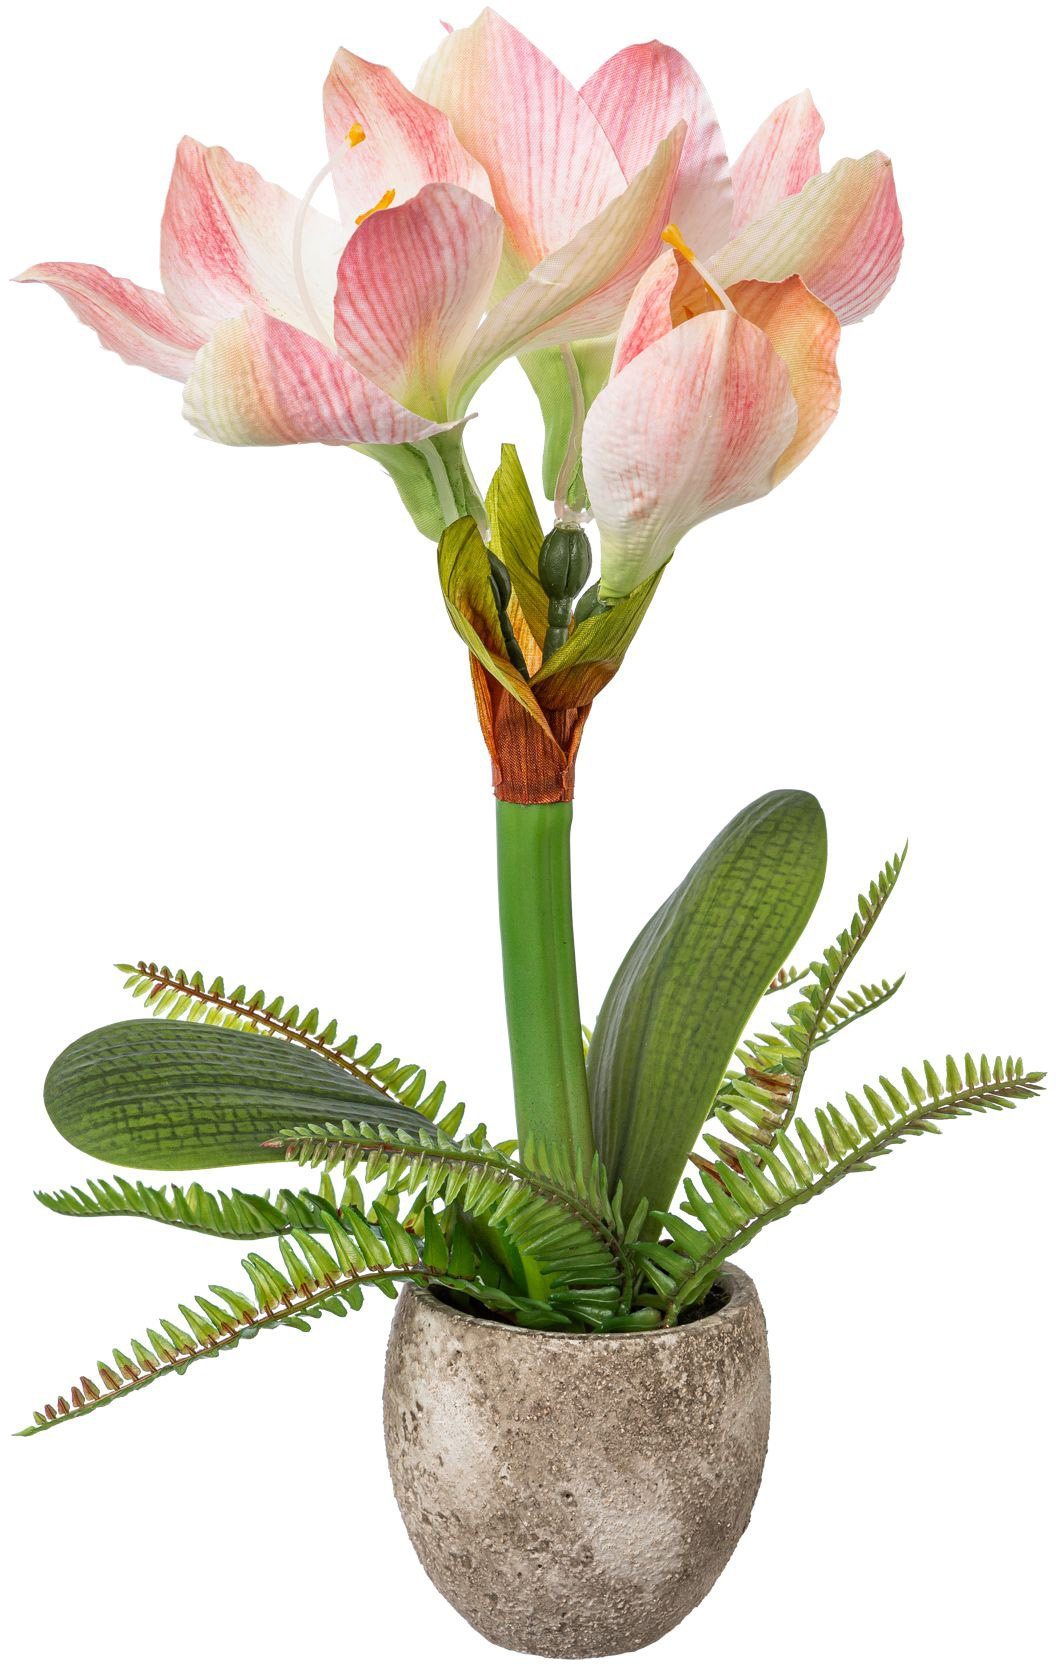 Winterliche Kunstpflanze Weihnachtsdeko Amaryllis, cm, Blumenpracht green, 35 im Höhe Creativ Zementtopf mit Farnzweigen